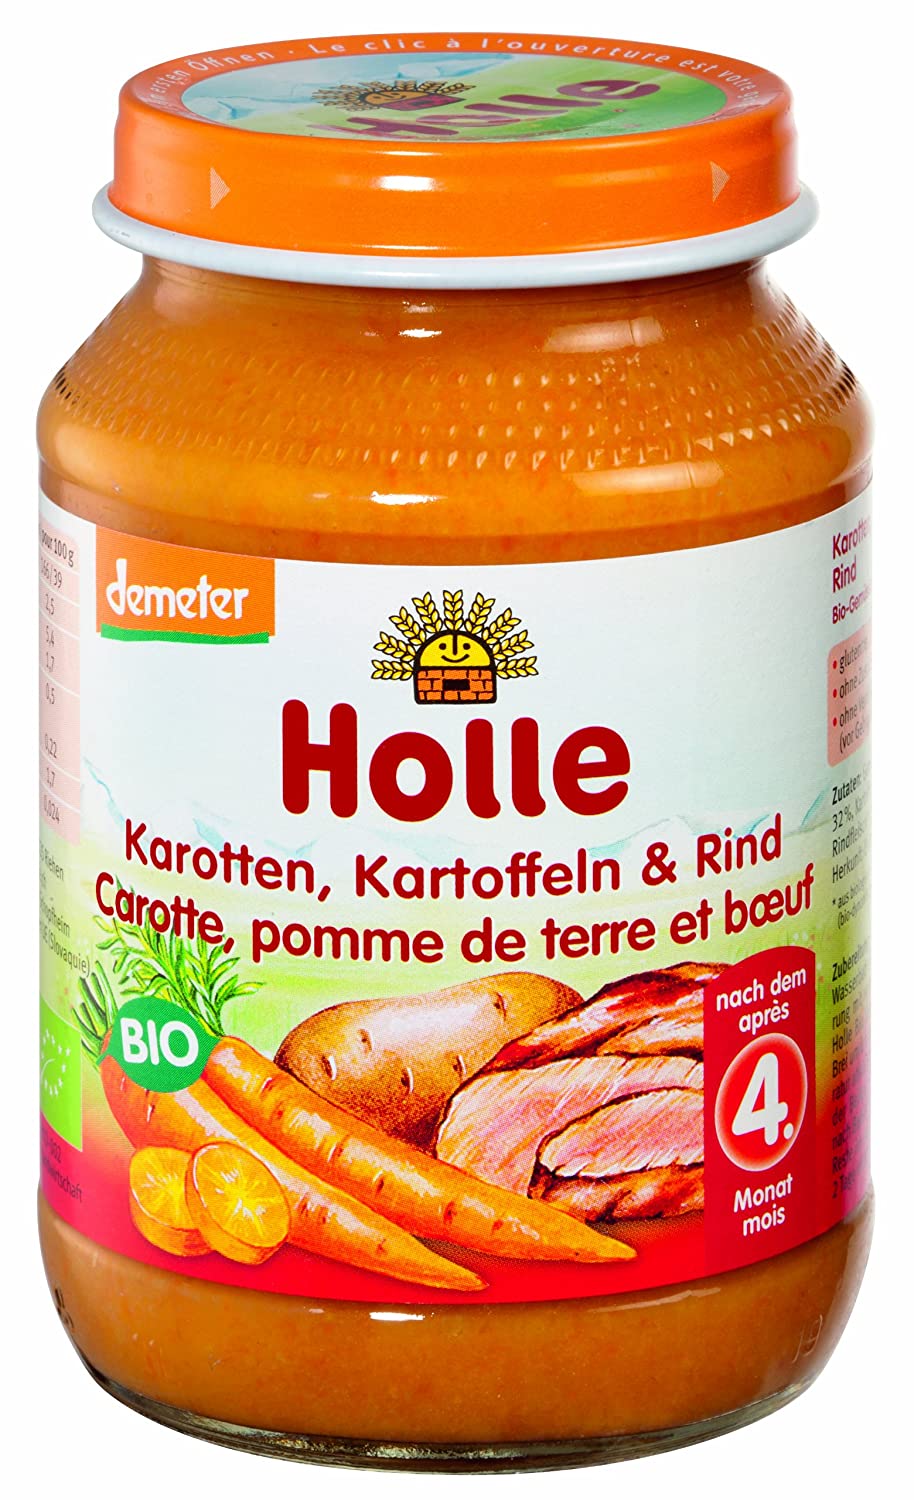 Holle Bio Karotten, Kartoffeln & Rind (6 x 190 g)